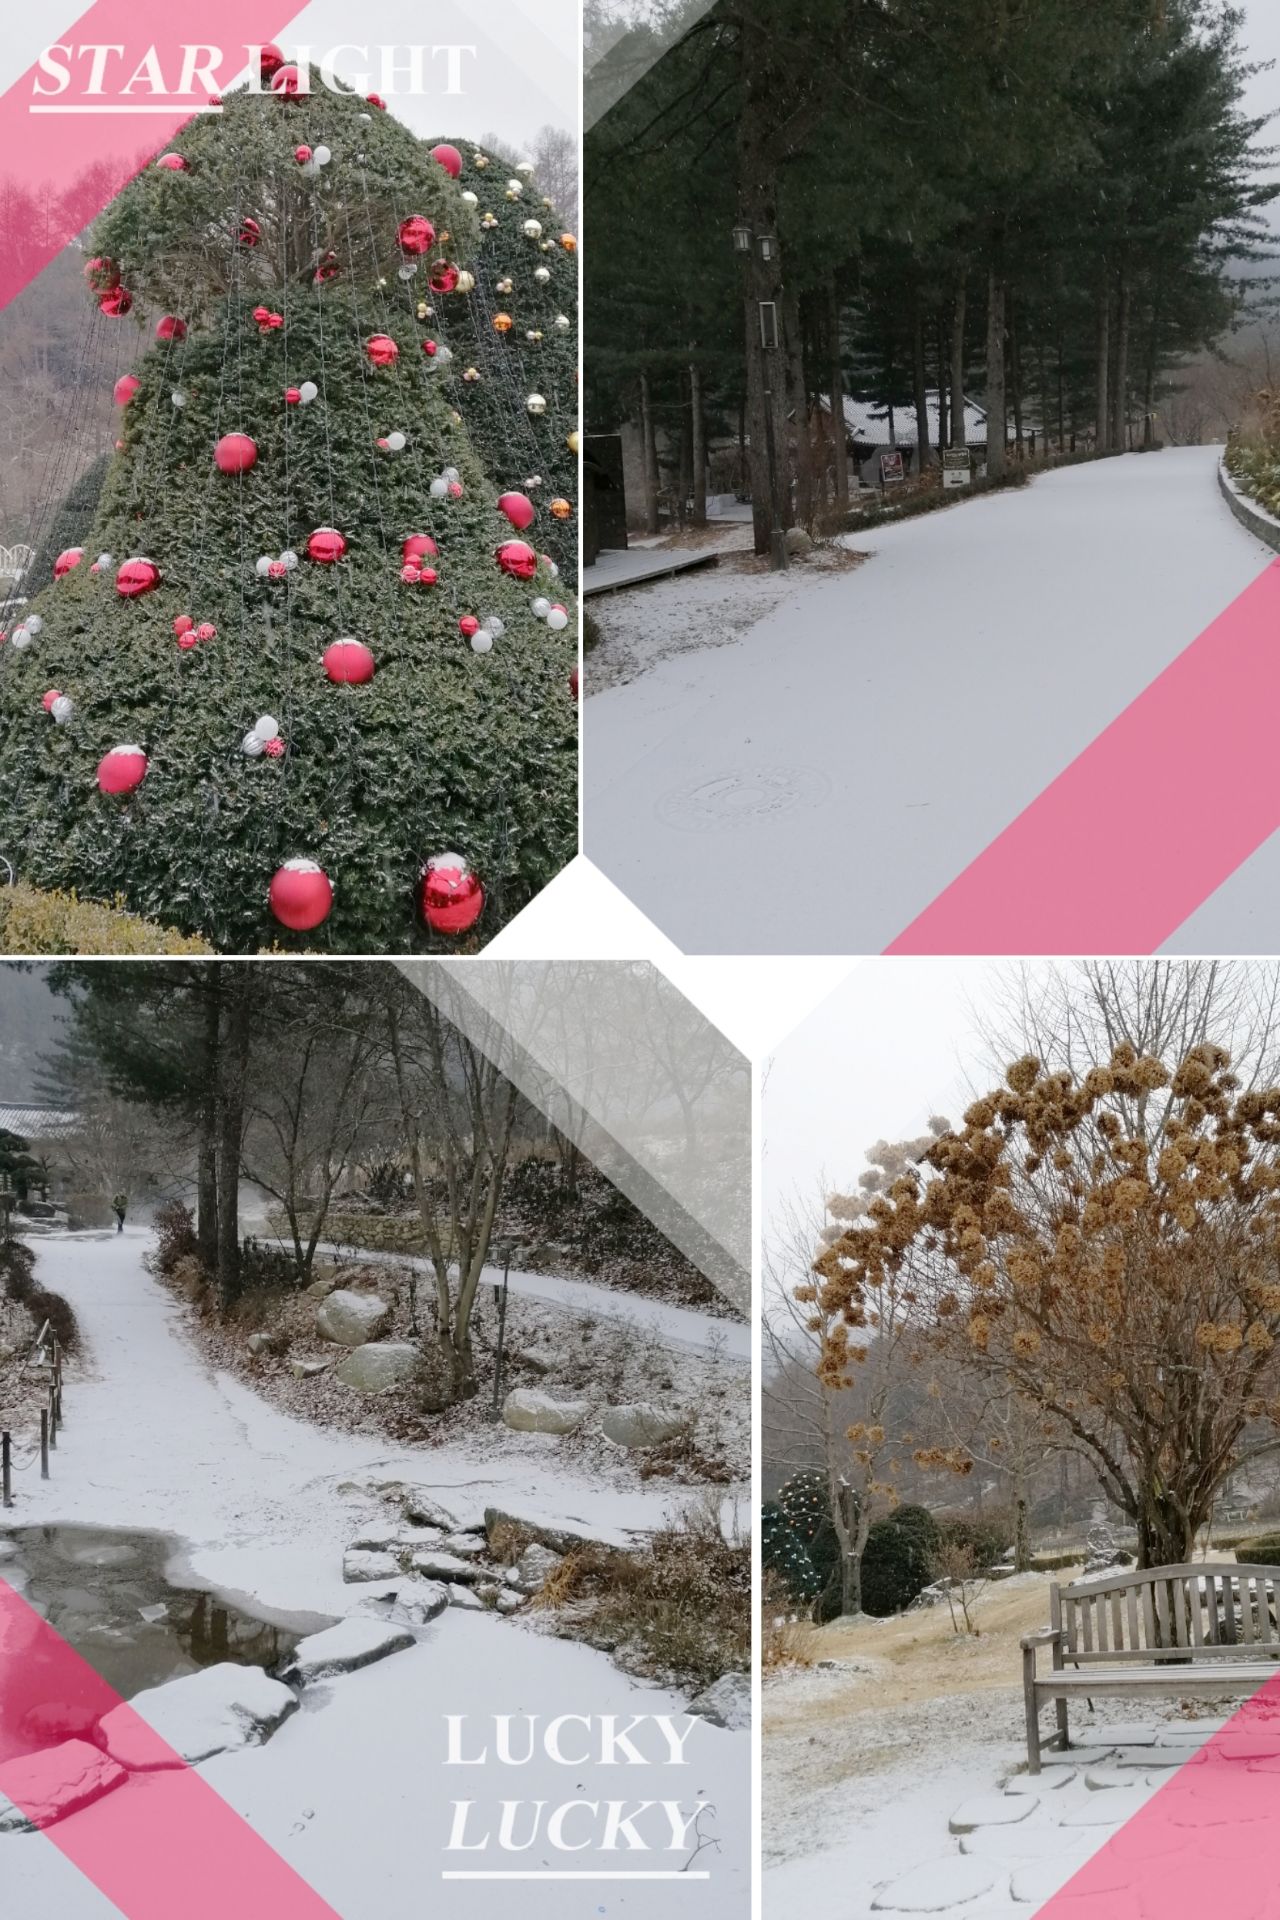 （更新）冬日 圖1，這幾天剛下一場雪，景區內也設置了聖誕裝飾。 秋紅～1 平日也是個很有特色的樹木園